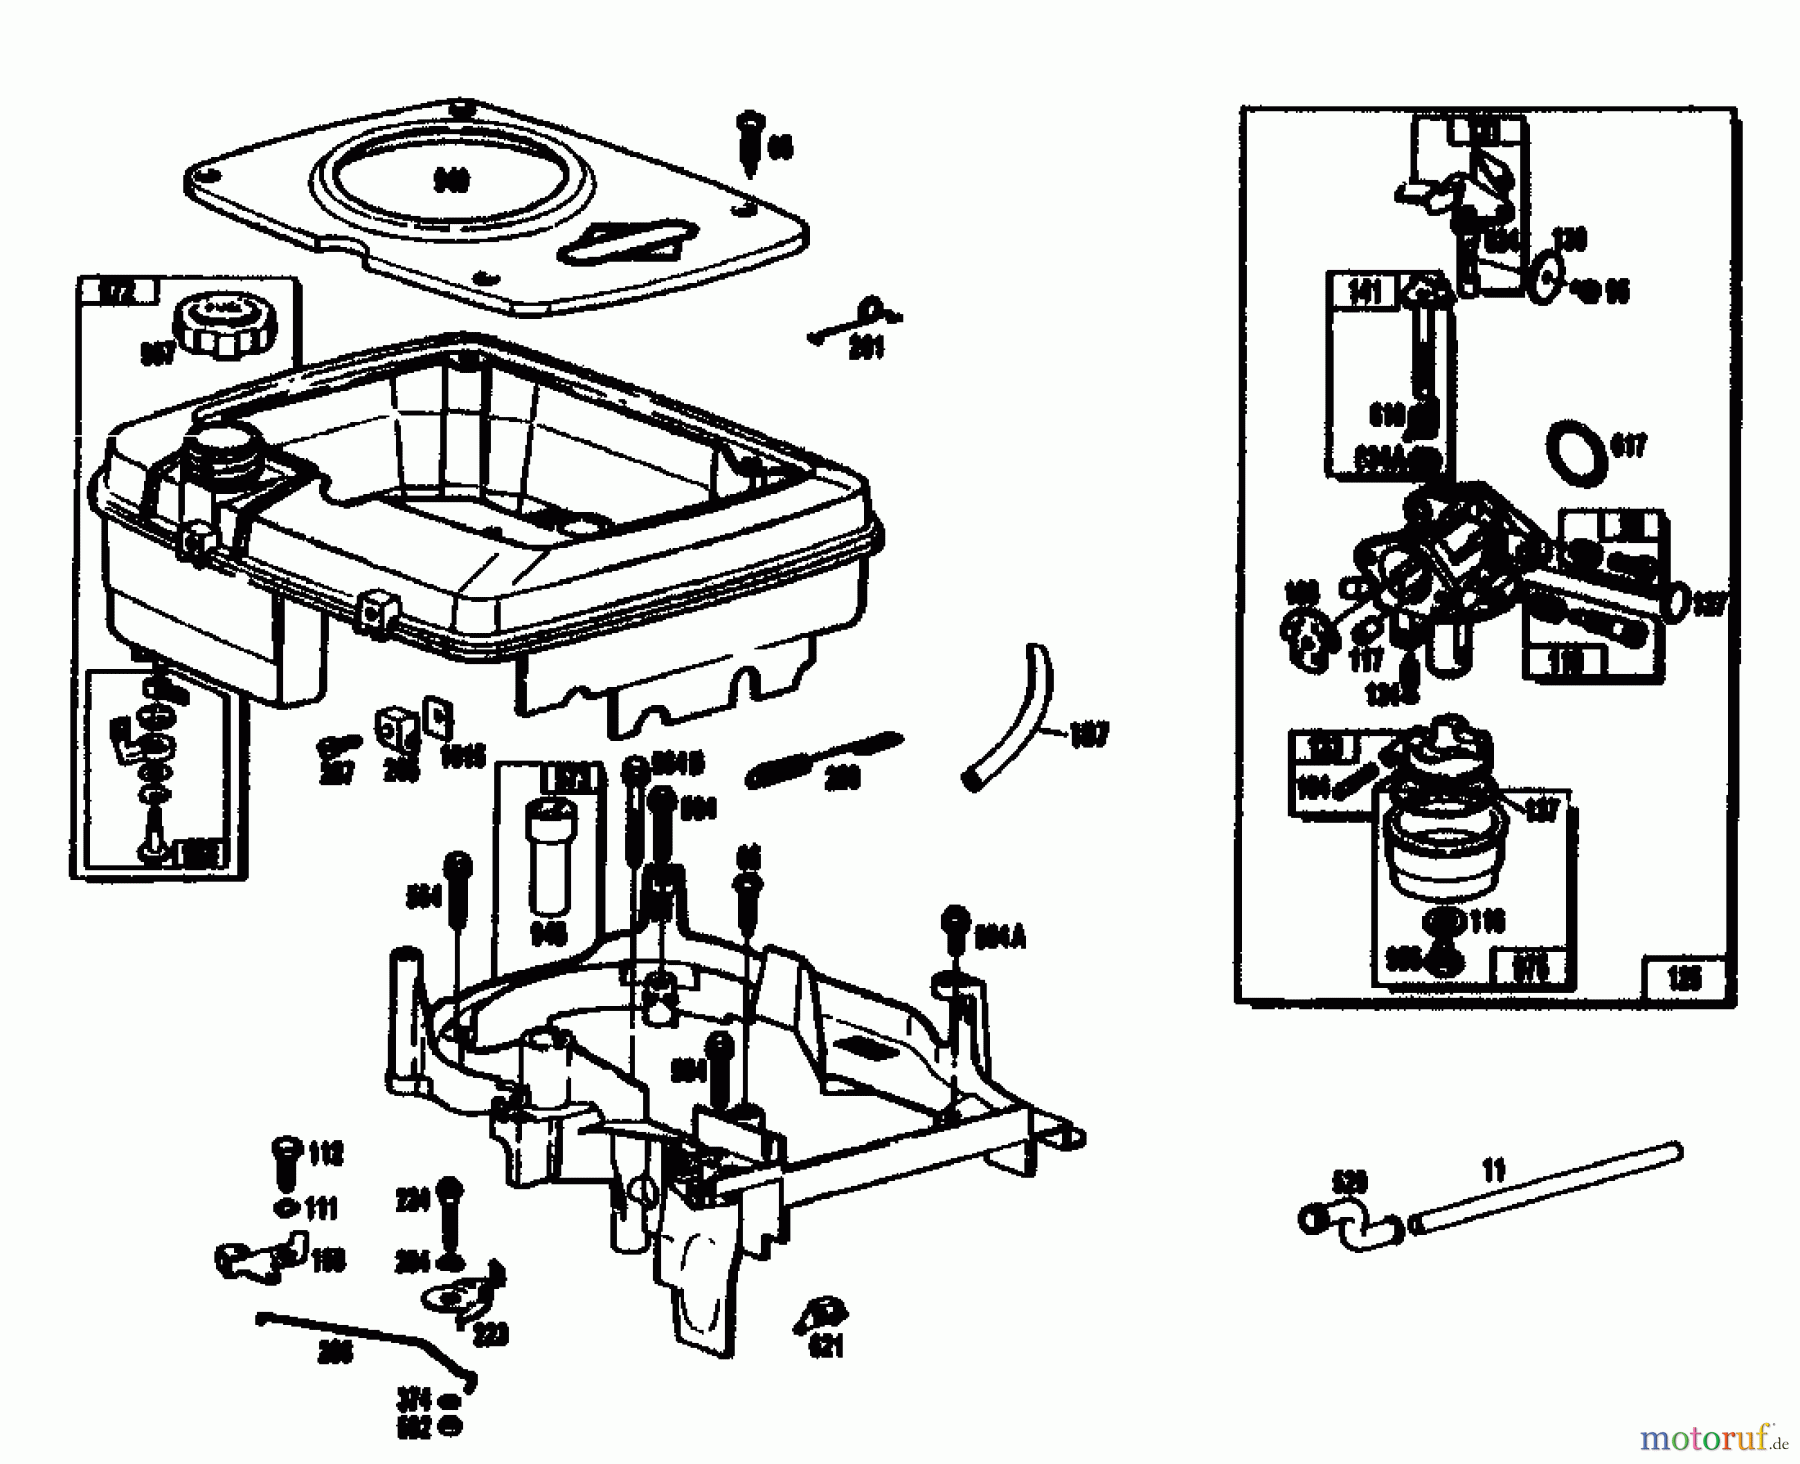  Gutbrod Cutter bar mower BM 710 07515.01  (1989) Fuel tank